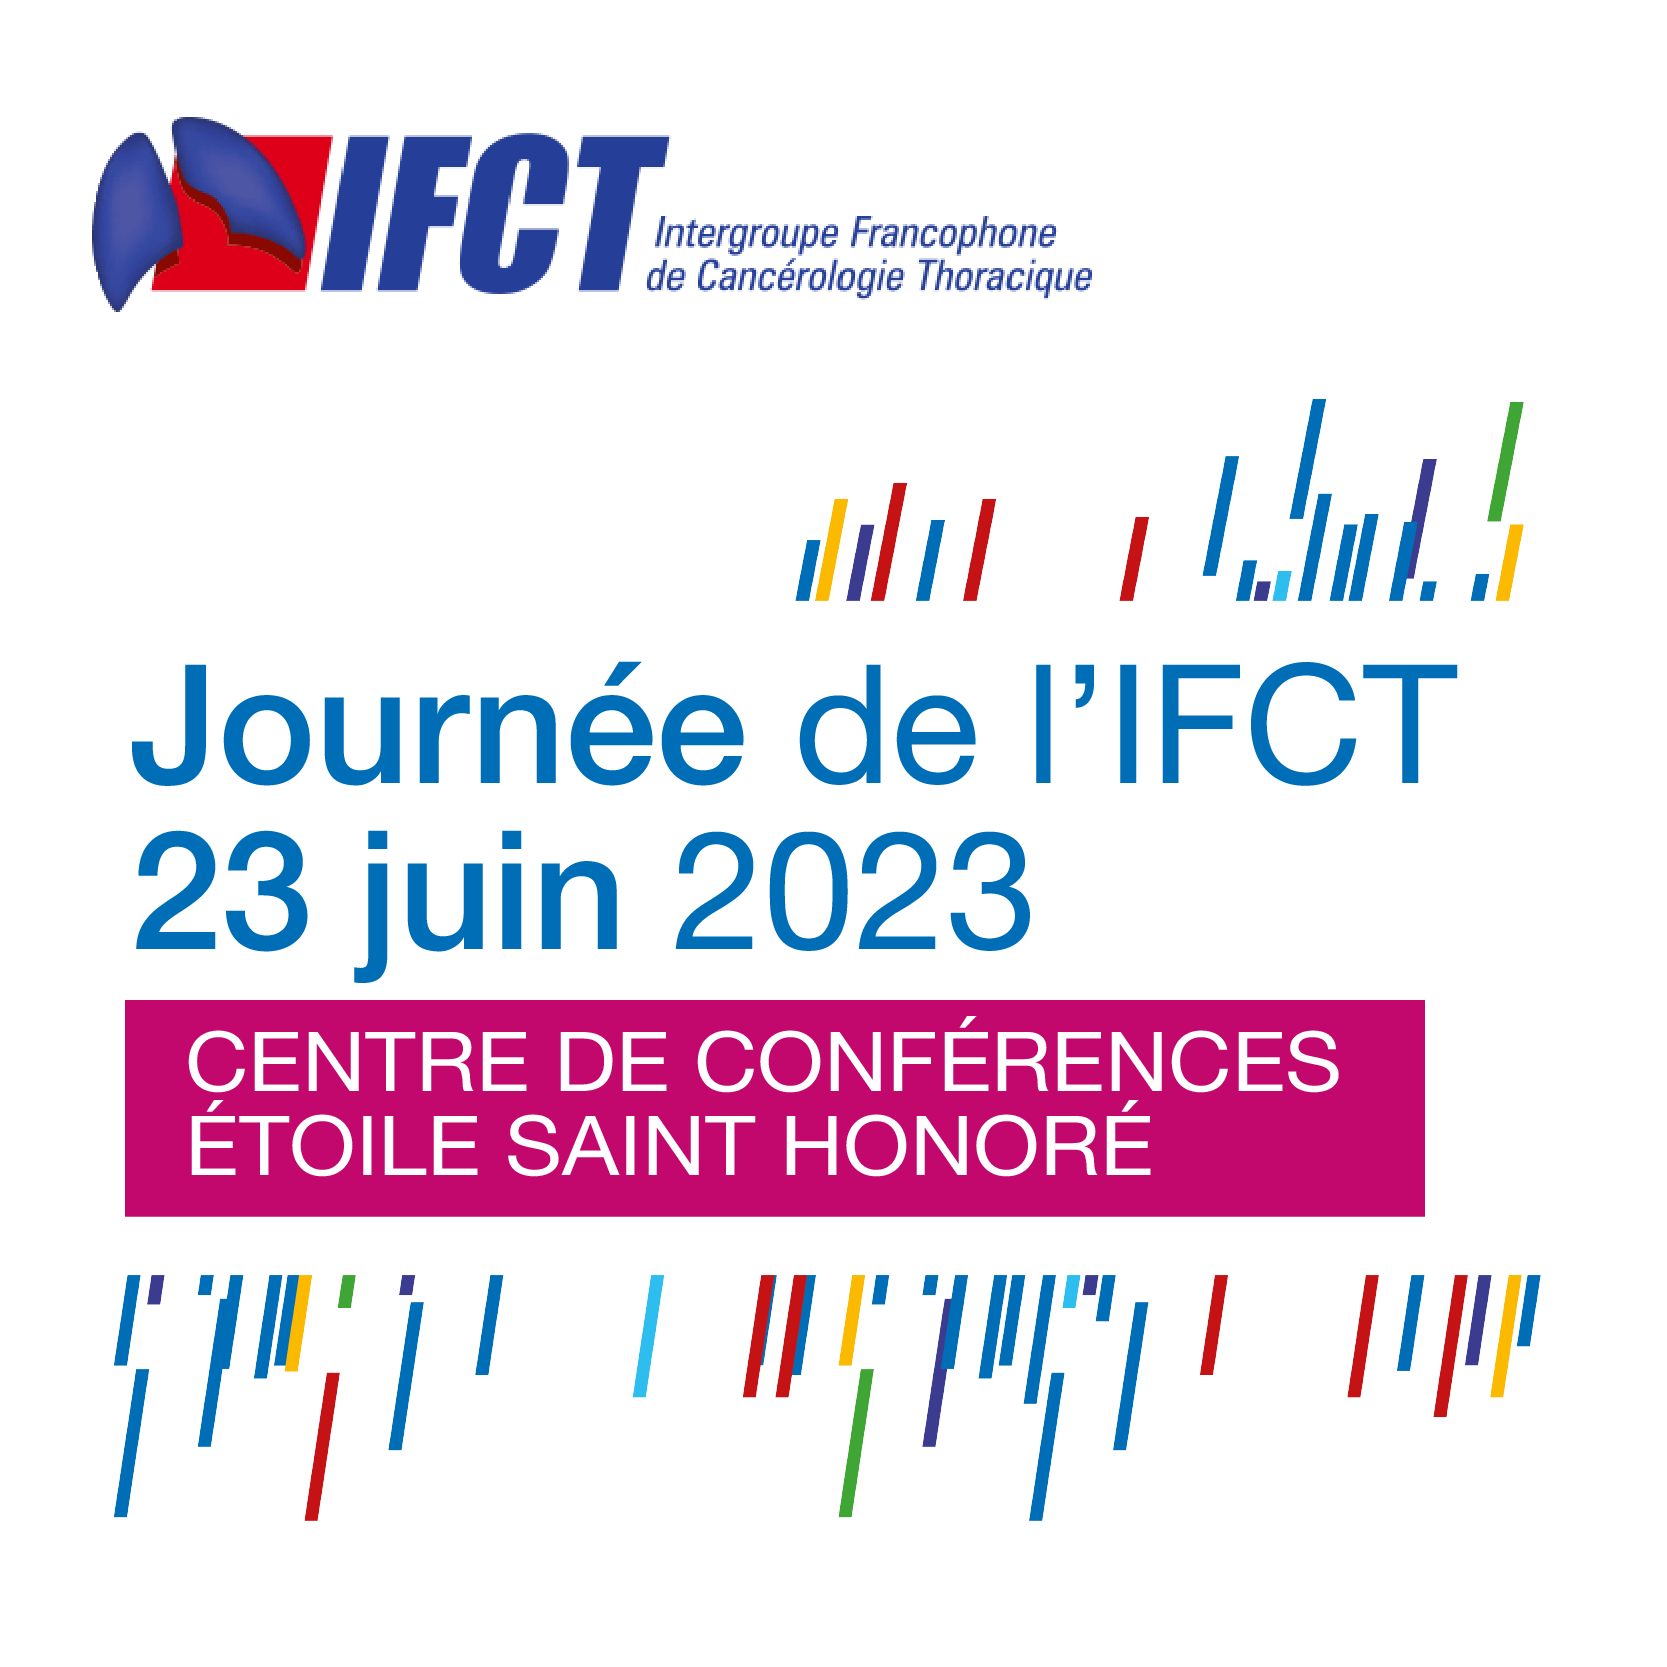 Journée de l’Intergroupe Francophone de Cancérologie Thoracique - IFCT 2023